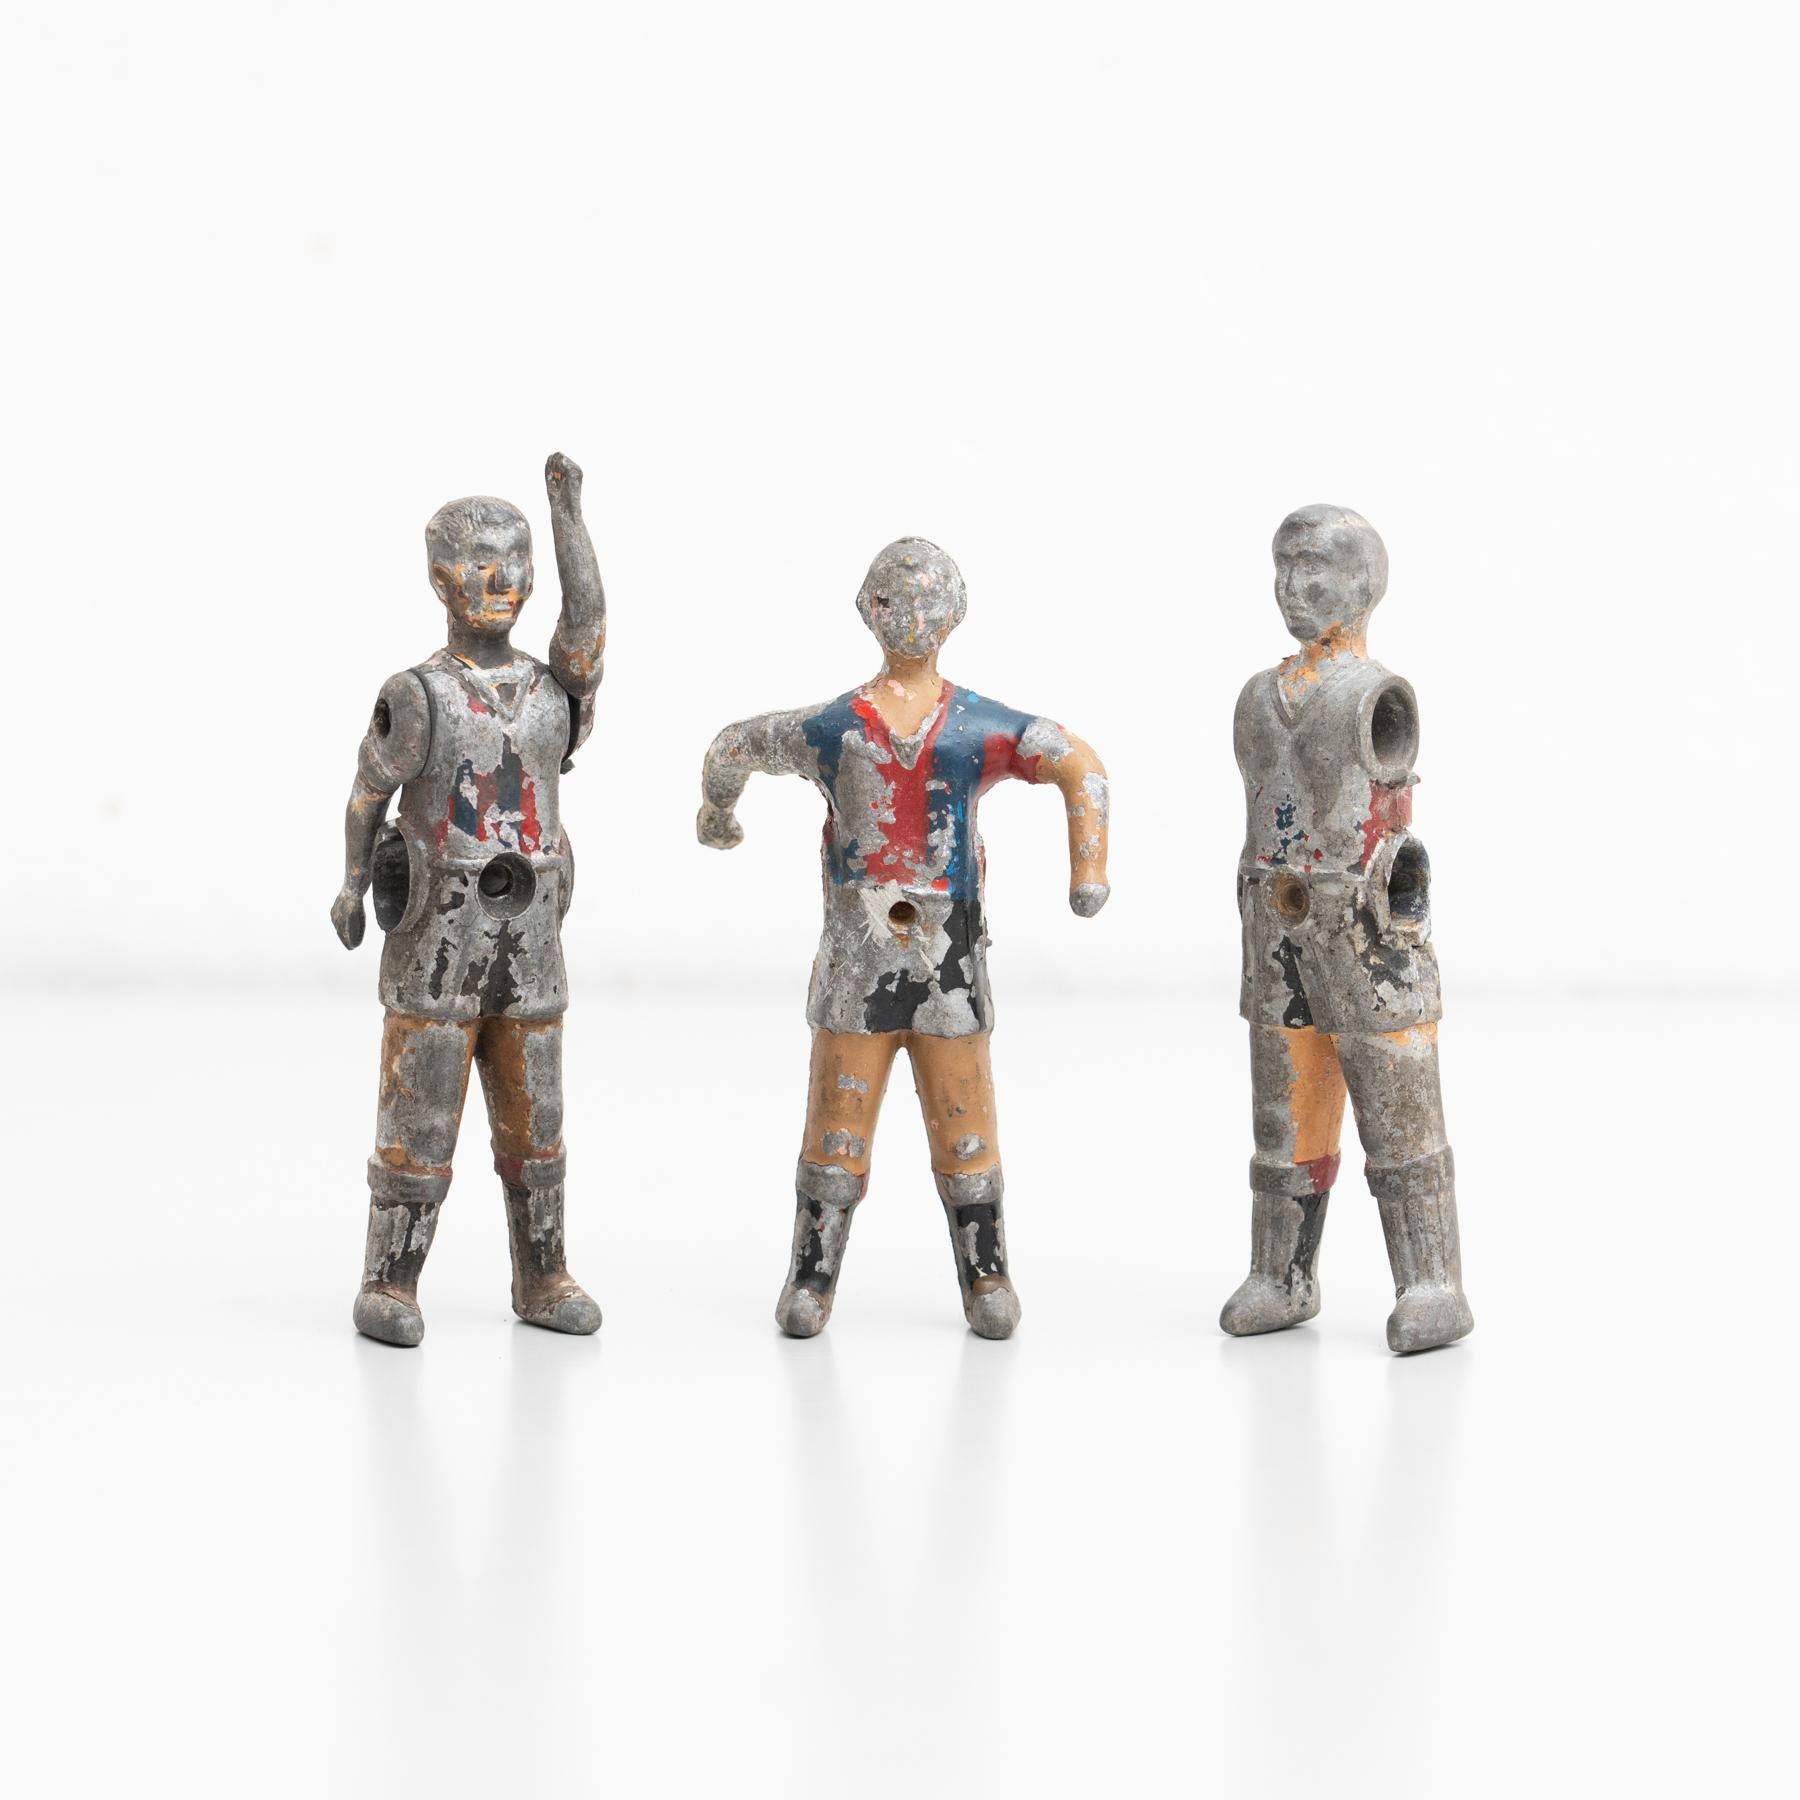 Jeu de trois joueurs de baby-foot. Les figurines traditionnelles en fer utilisées pour jouer à ce jeu espagnol classique 